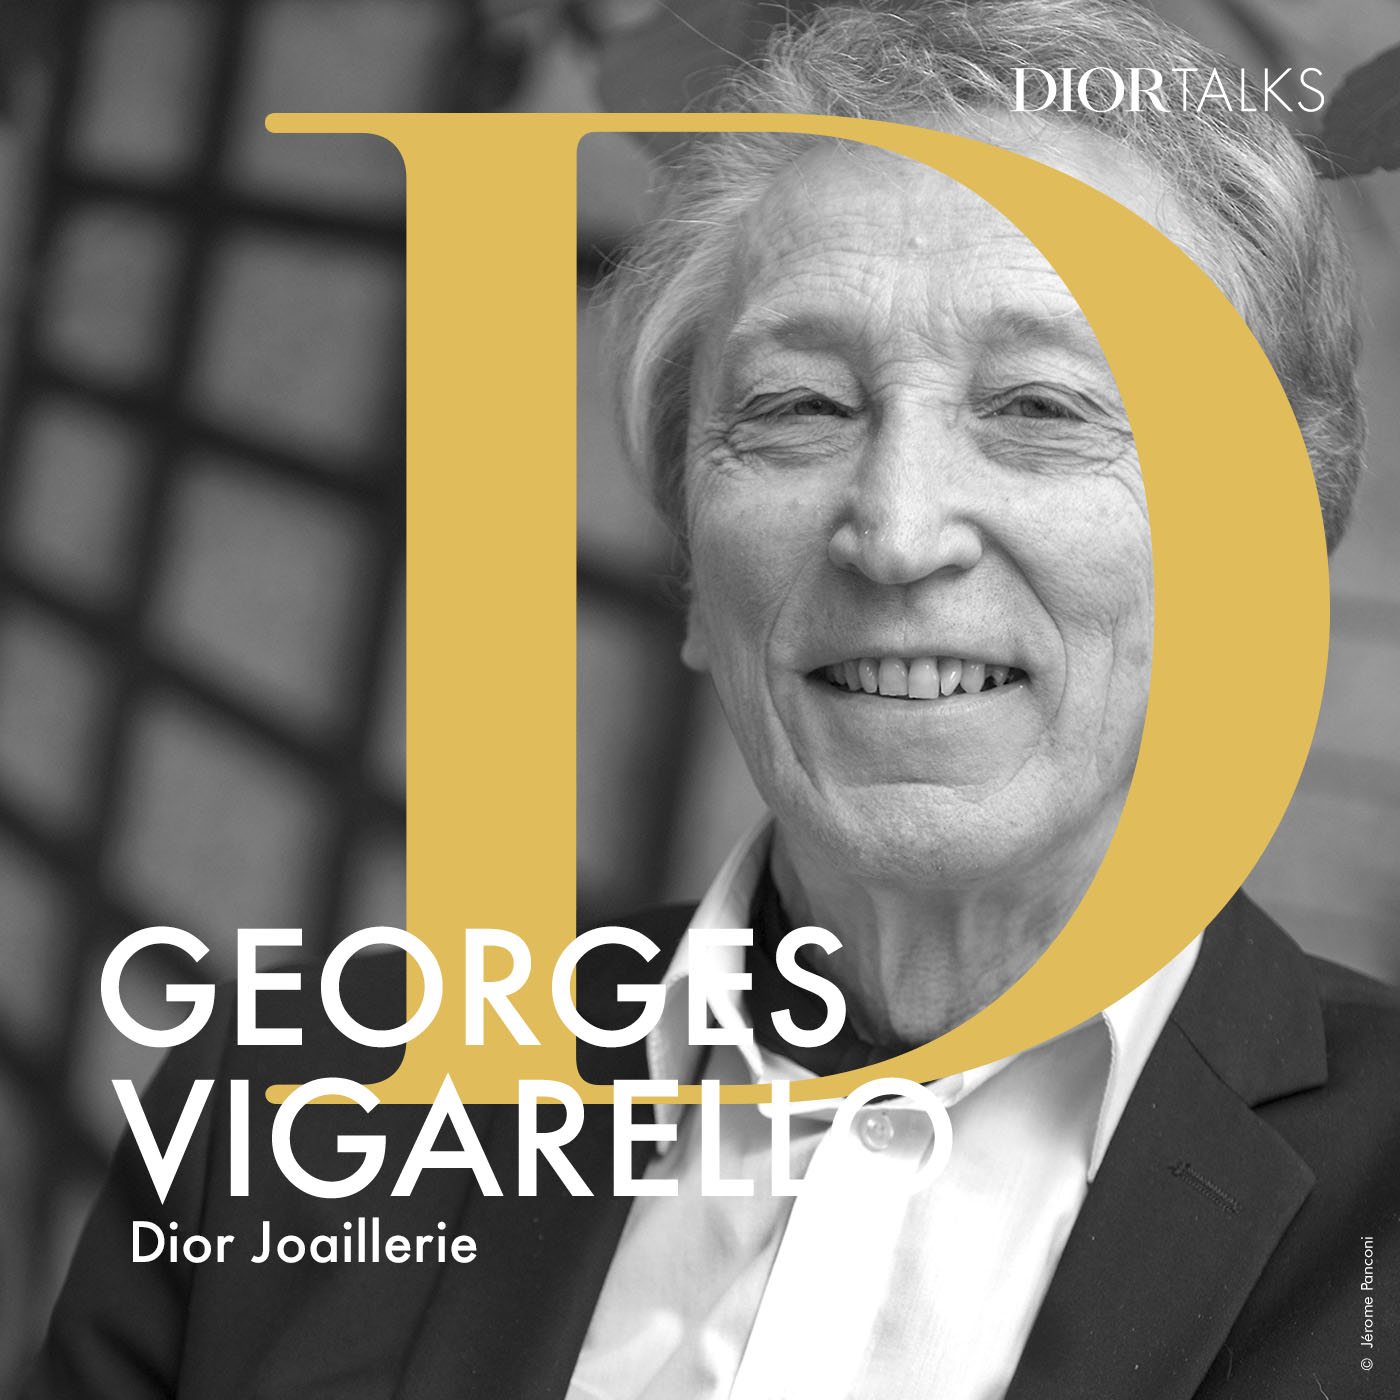 Dior : en podcast, la joaillerie racontée par des philosophes, historiens et critiques d’art